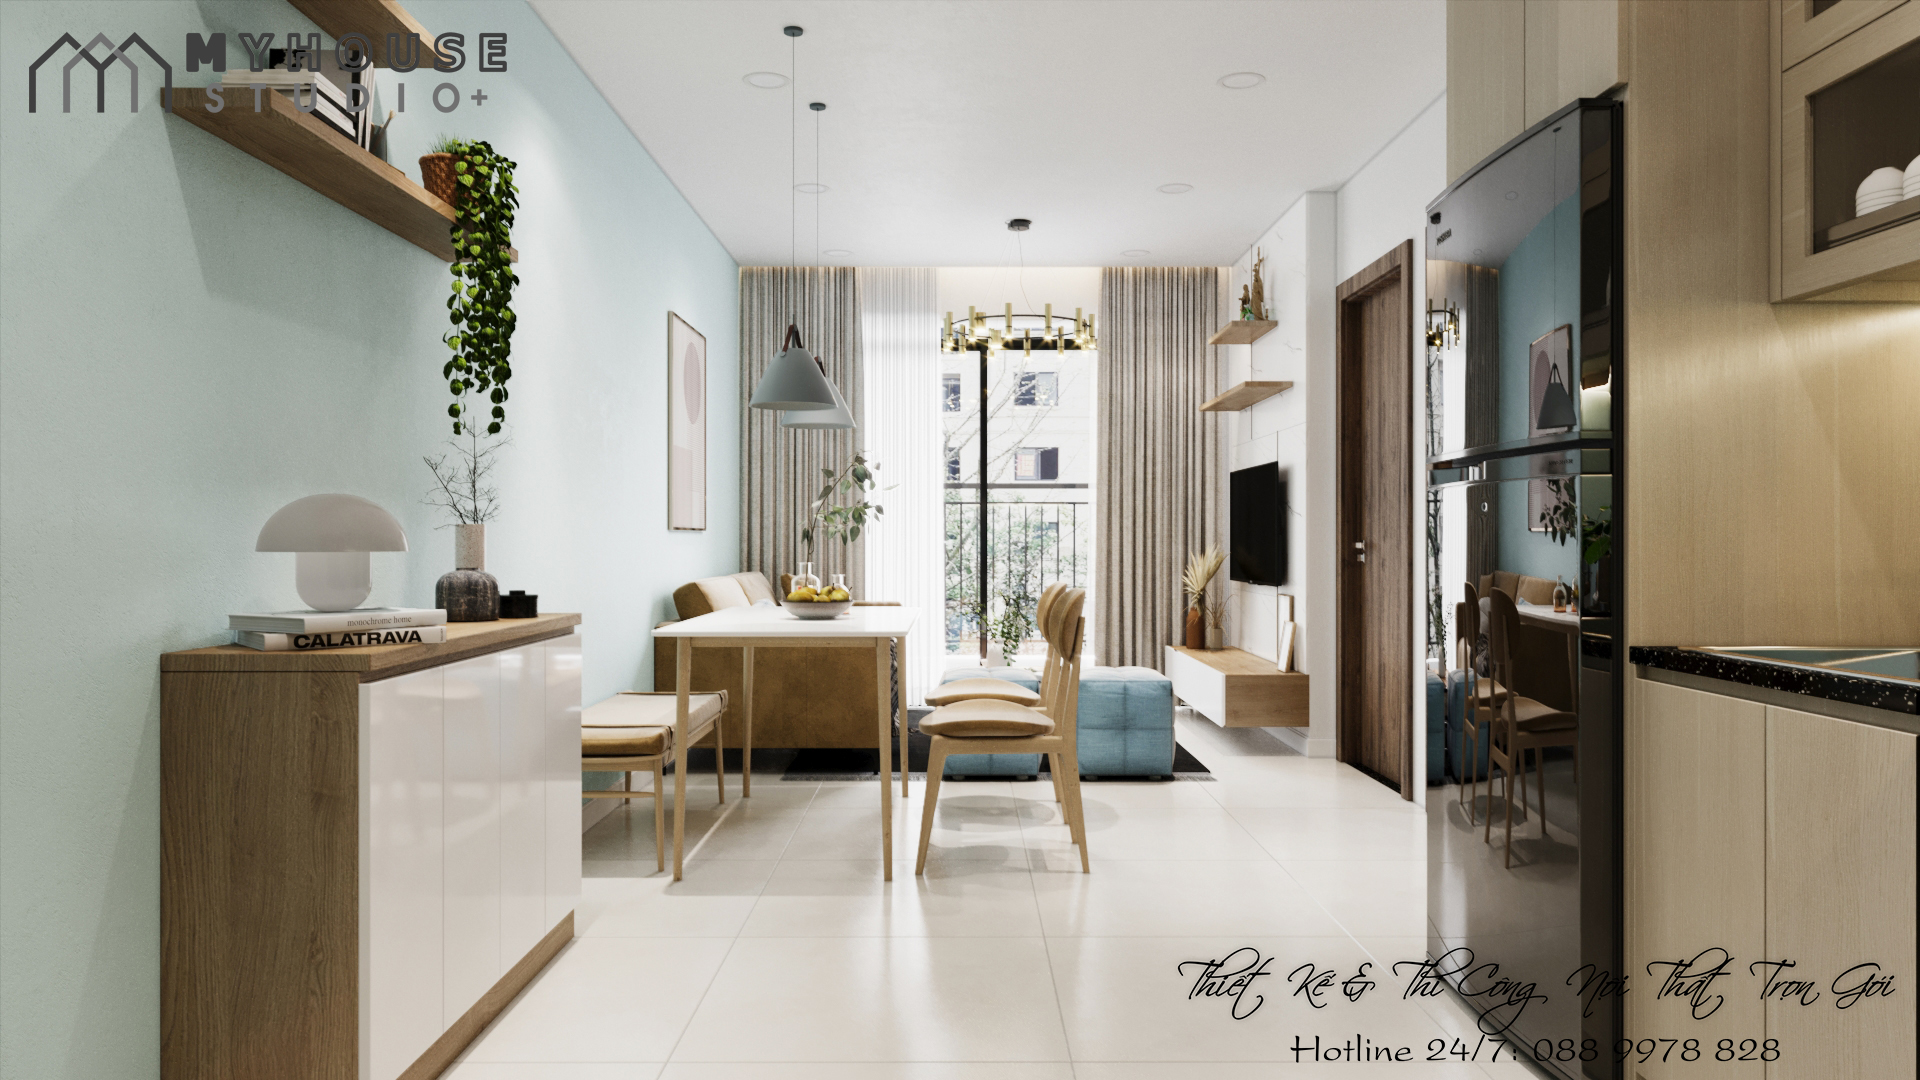 Thiết kế nội thất căn hộ Safira Khang Điền Quận 9: Hãy cho Safira Khang Điền mang đến cho bạn một trải nghiệm tuyệt vời về thiết kế nội thất. Với nhiều lựa chọn về màu sắc và kiểu dáng, bạn sẽ được thỏa sức tạo ra nơi ở mang phong cách riêng của mình. Xem hình ảnh để thấy mọi chi tiết thiết kế căn hộ.